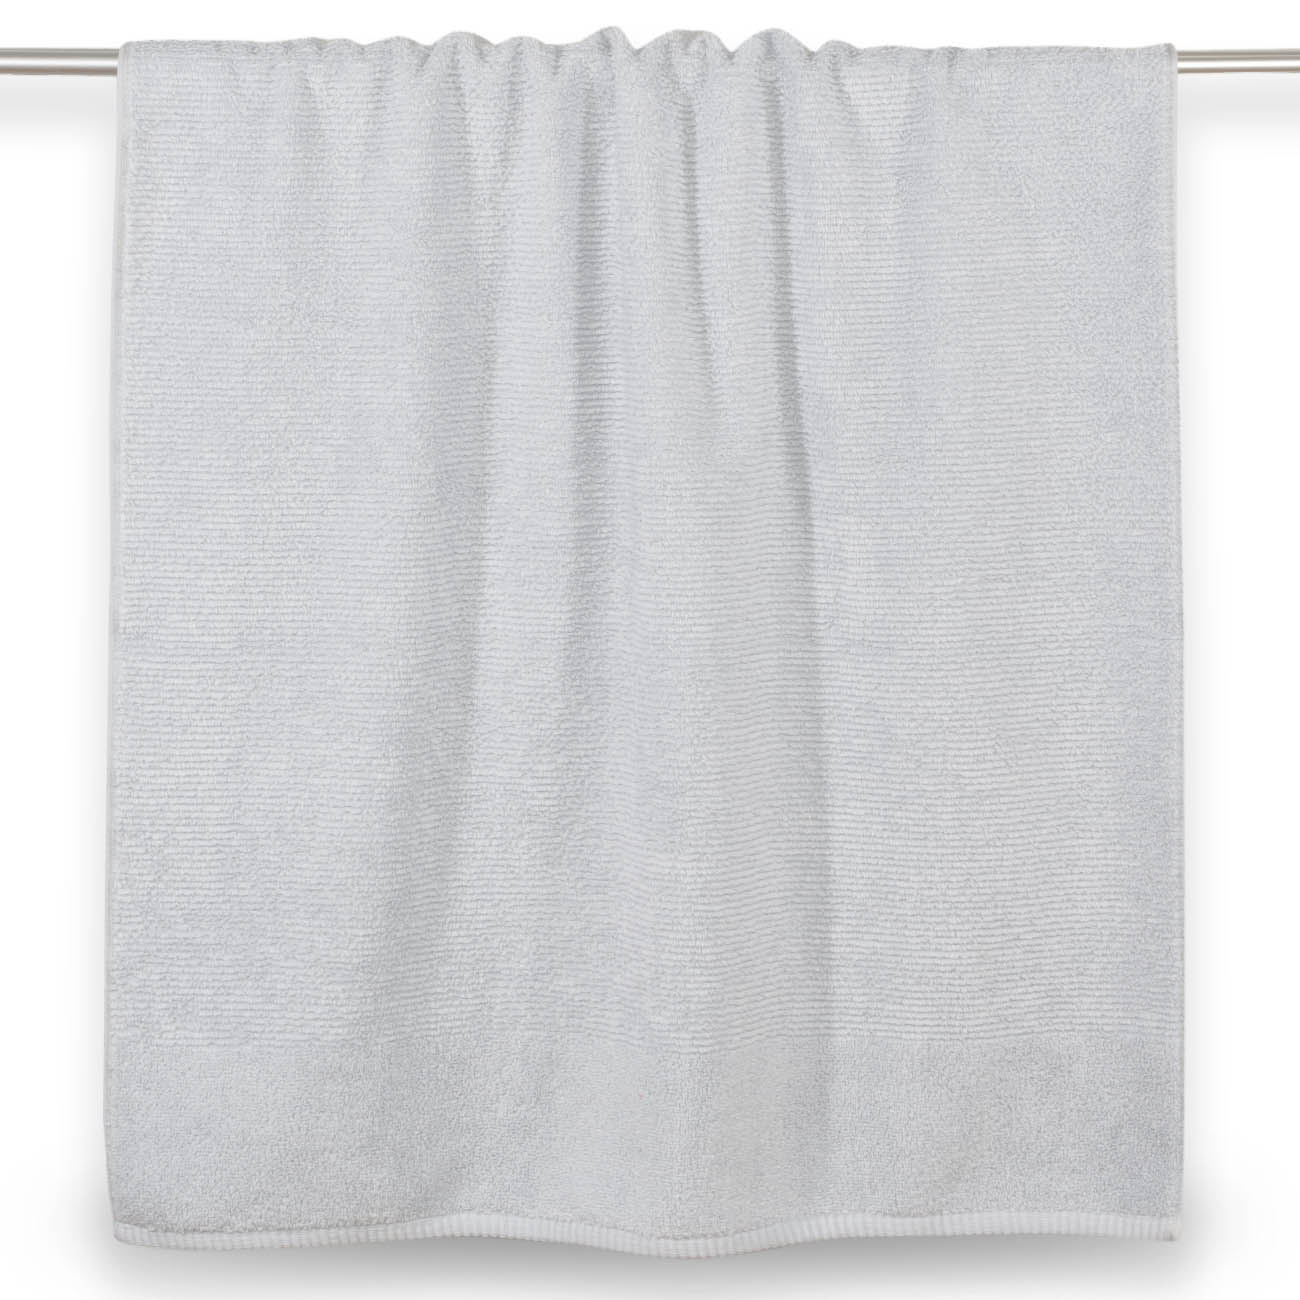 Towel, 70x140 cm, cotton, blue, Terry cotton изображение № 2